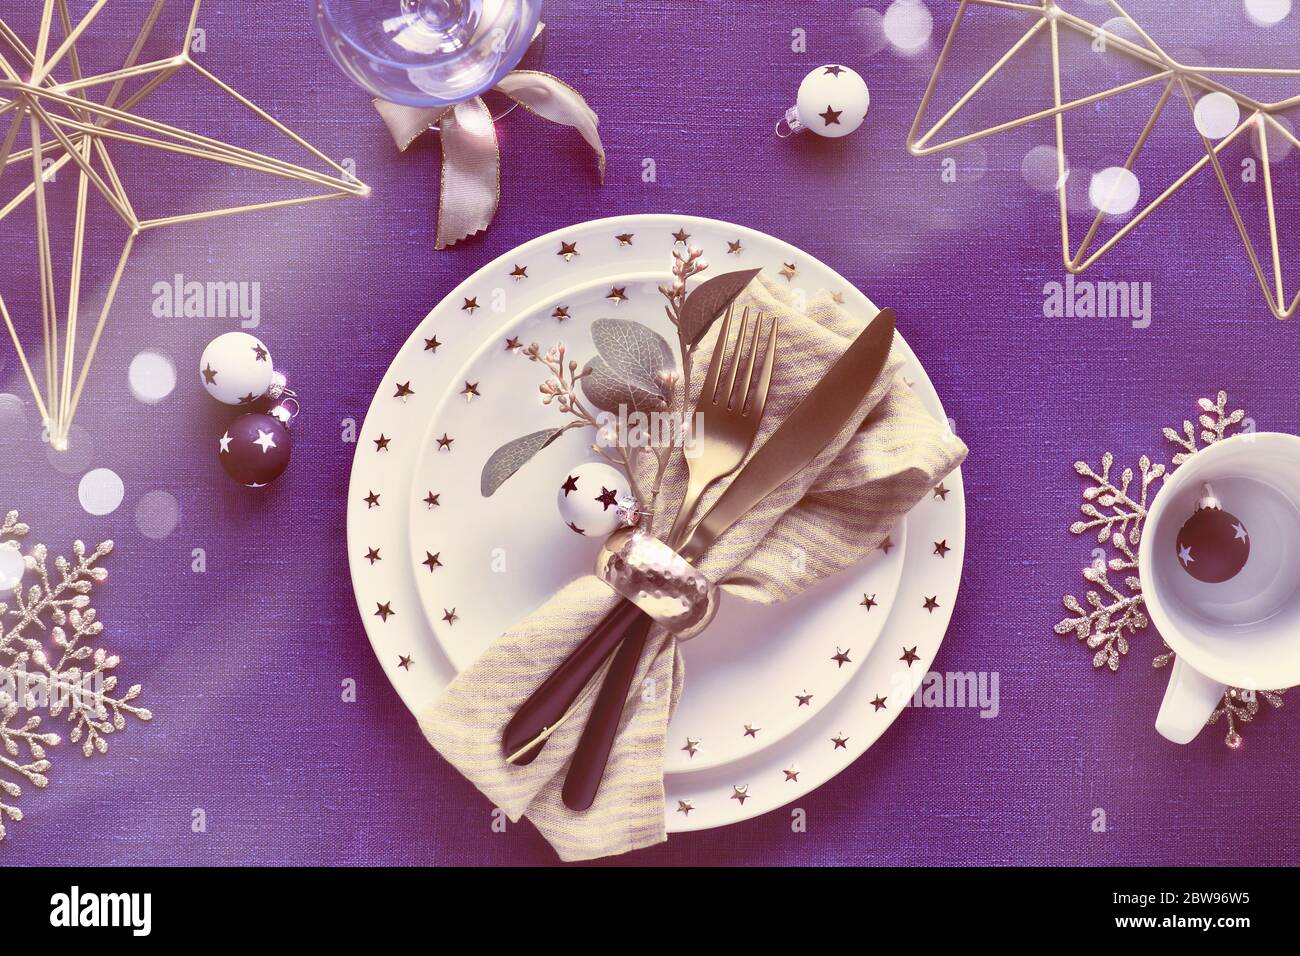 Tavolo natalizio con piatto bianco e utensili dorati e decorazioni dorate. Disposizione piatta, vista dall'alto su sfondo in tessuto di lino blu scuro. Xmas ligh Foto Stock